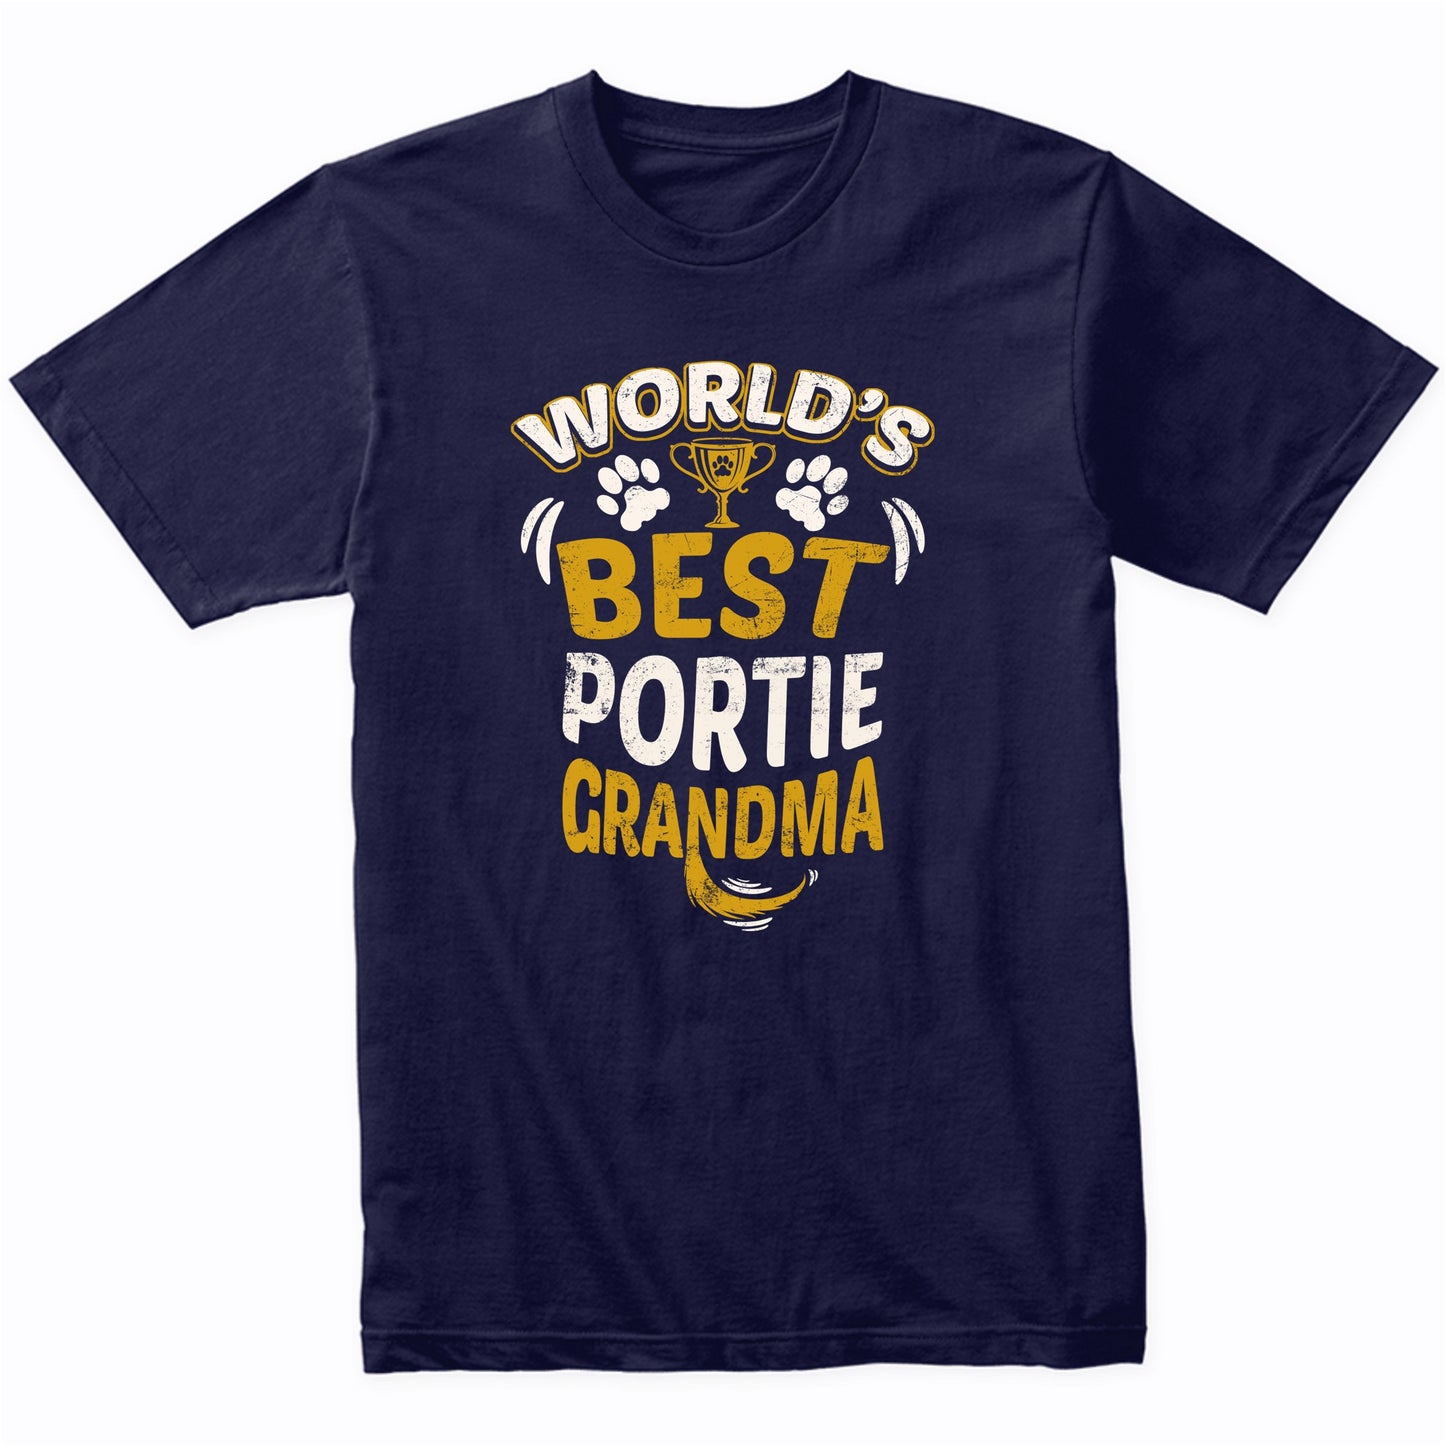 World's Best Portie Grandma Graphic T-Shirt